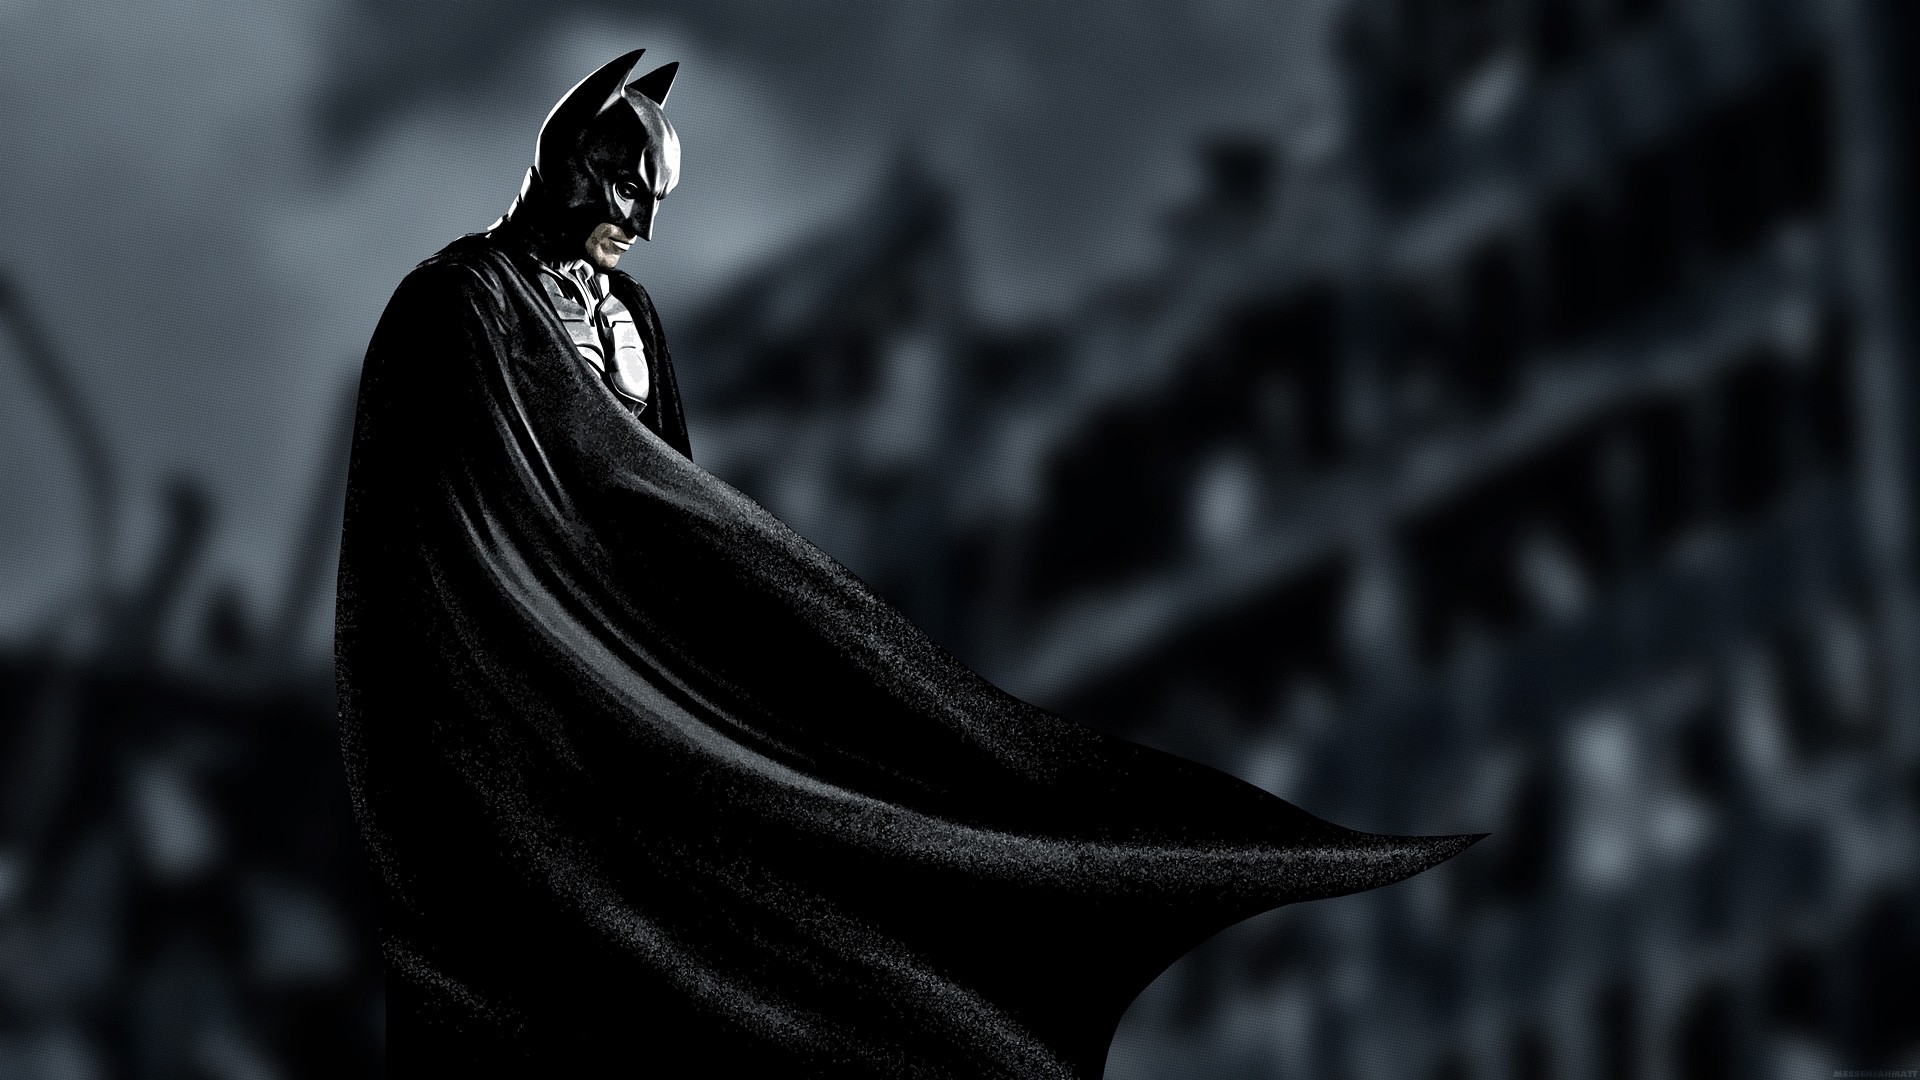 Batman HD Wallpaper X